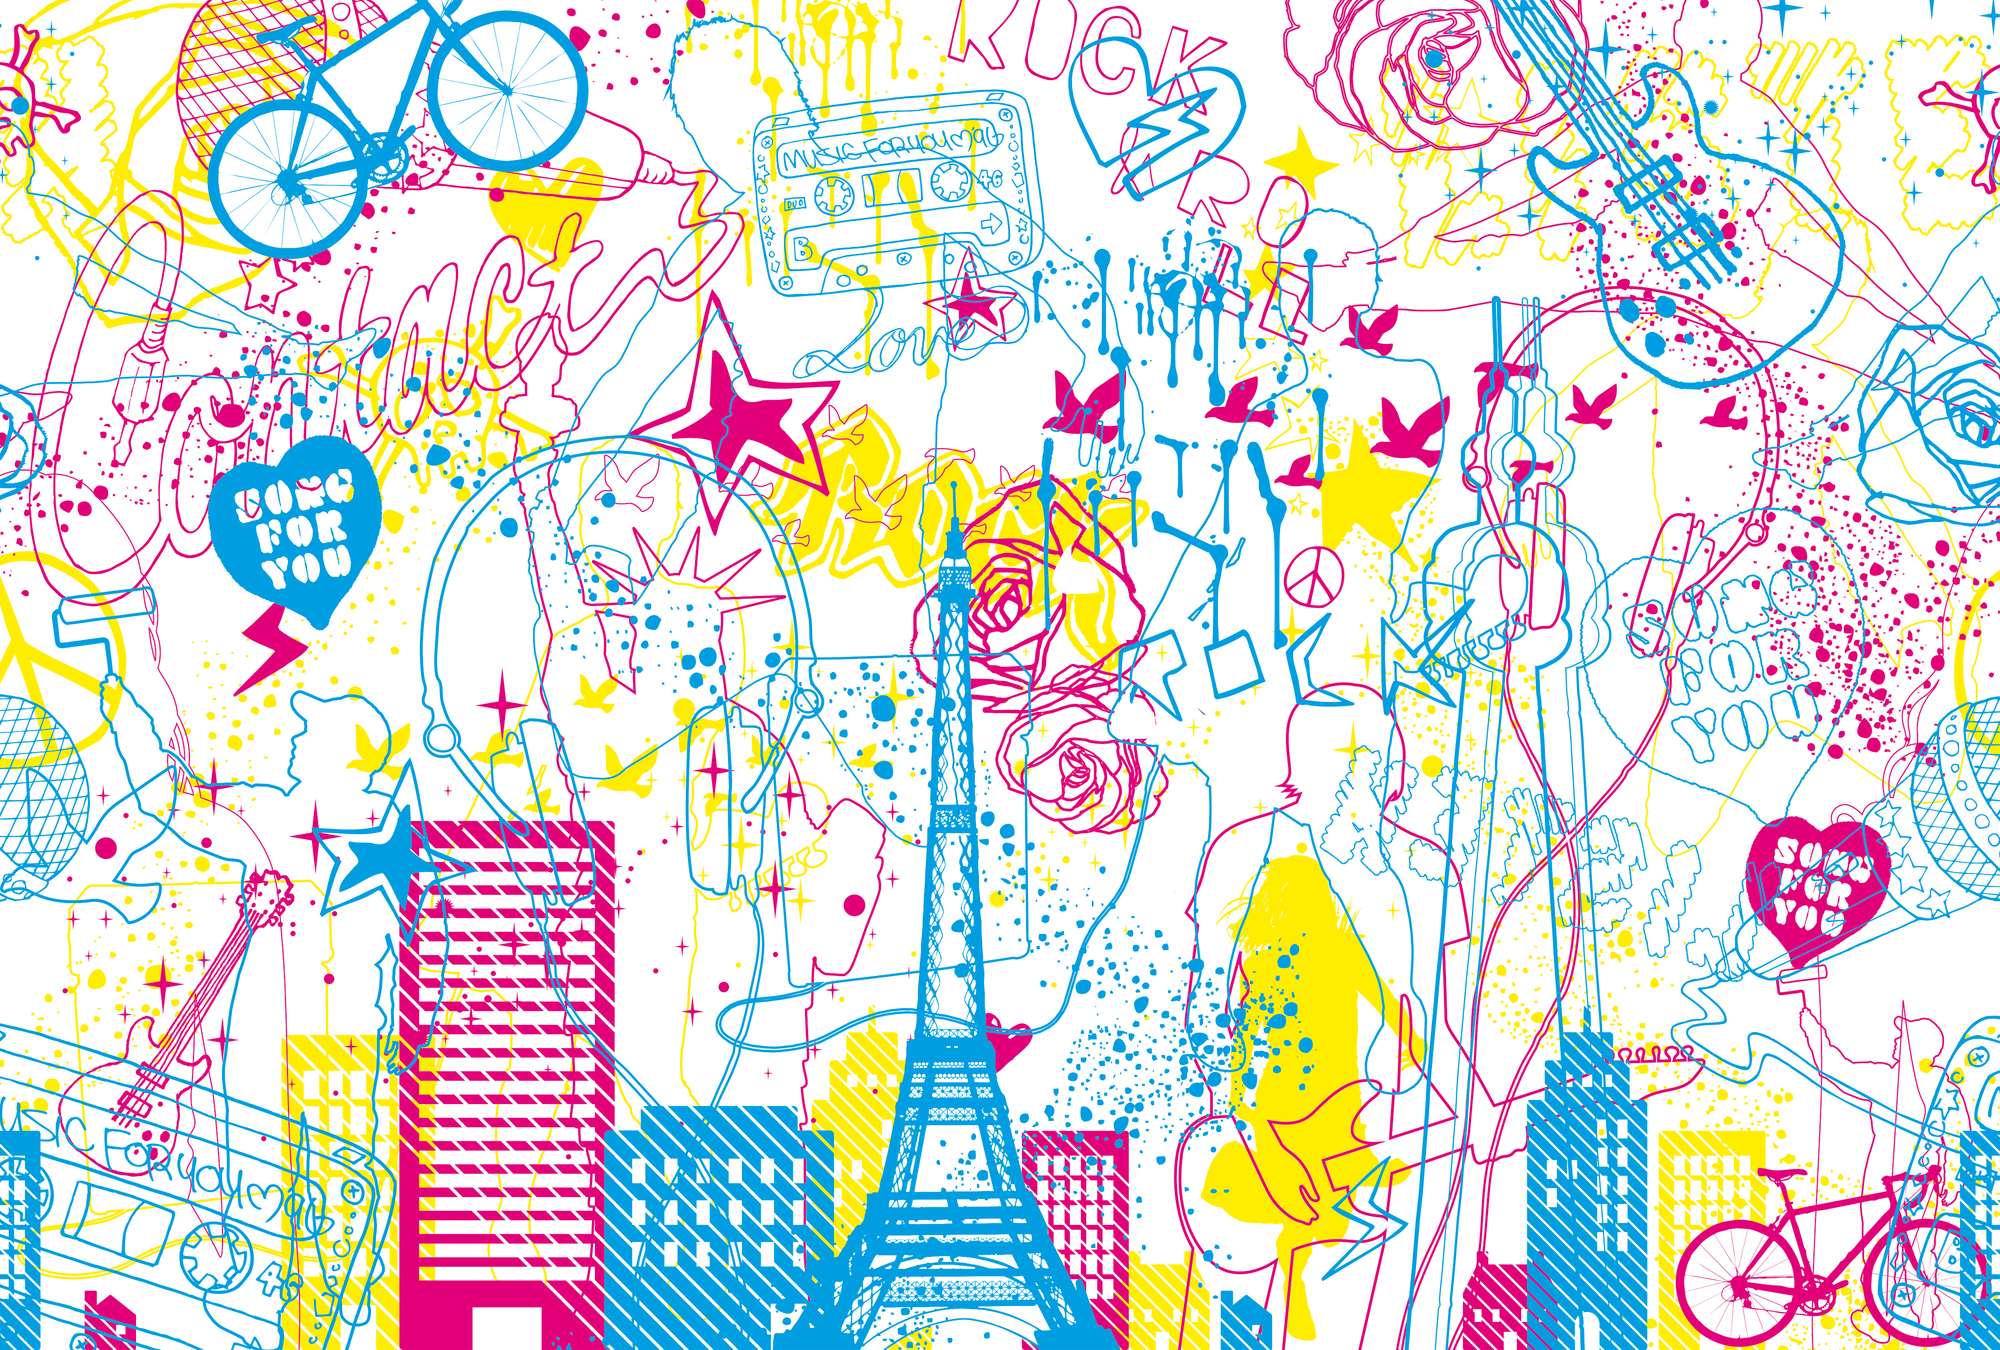             Música y ciudad - Mural de pared Diseño infantil Doodle Look
        